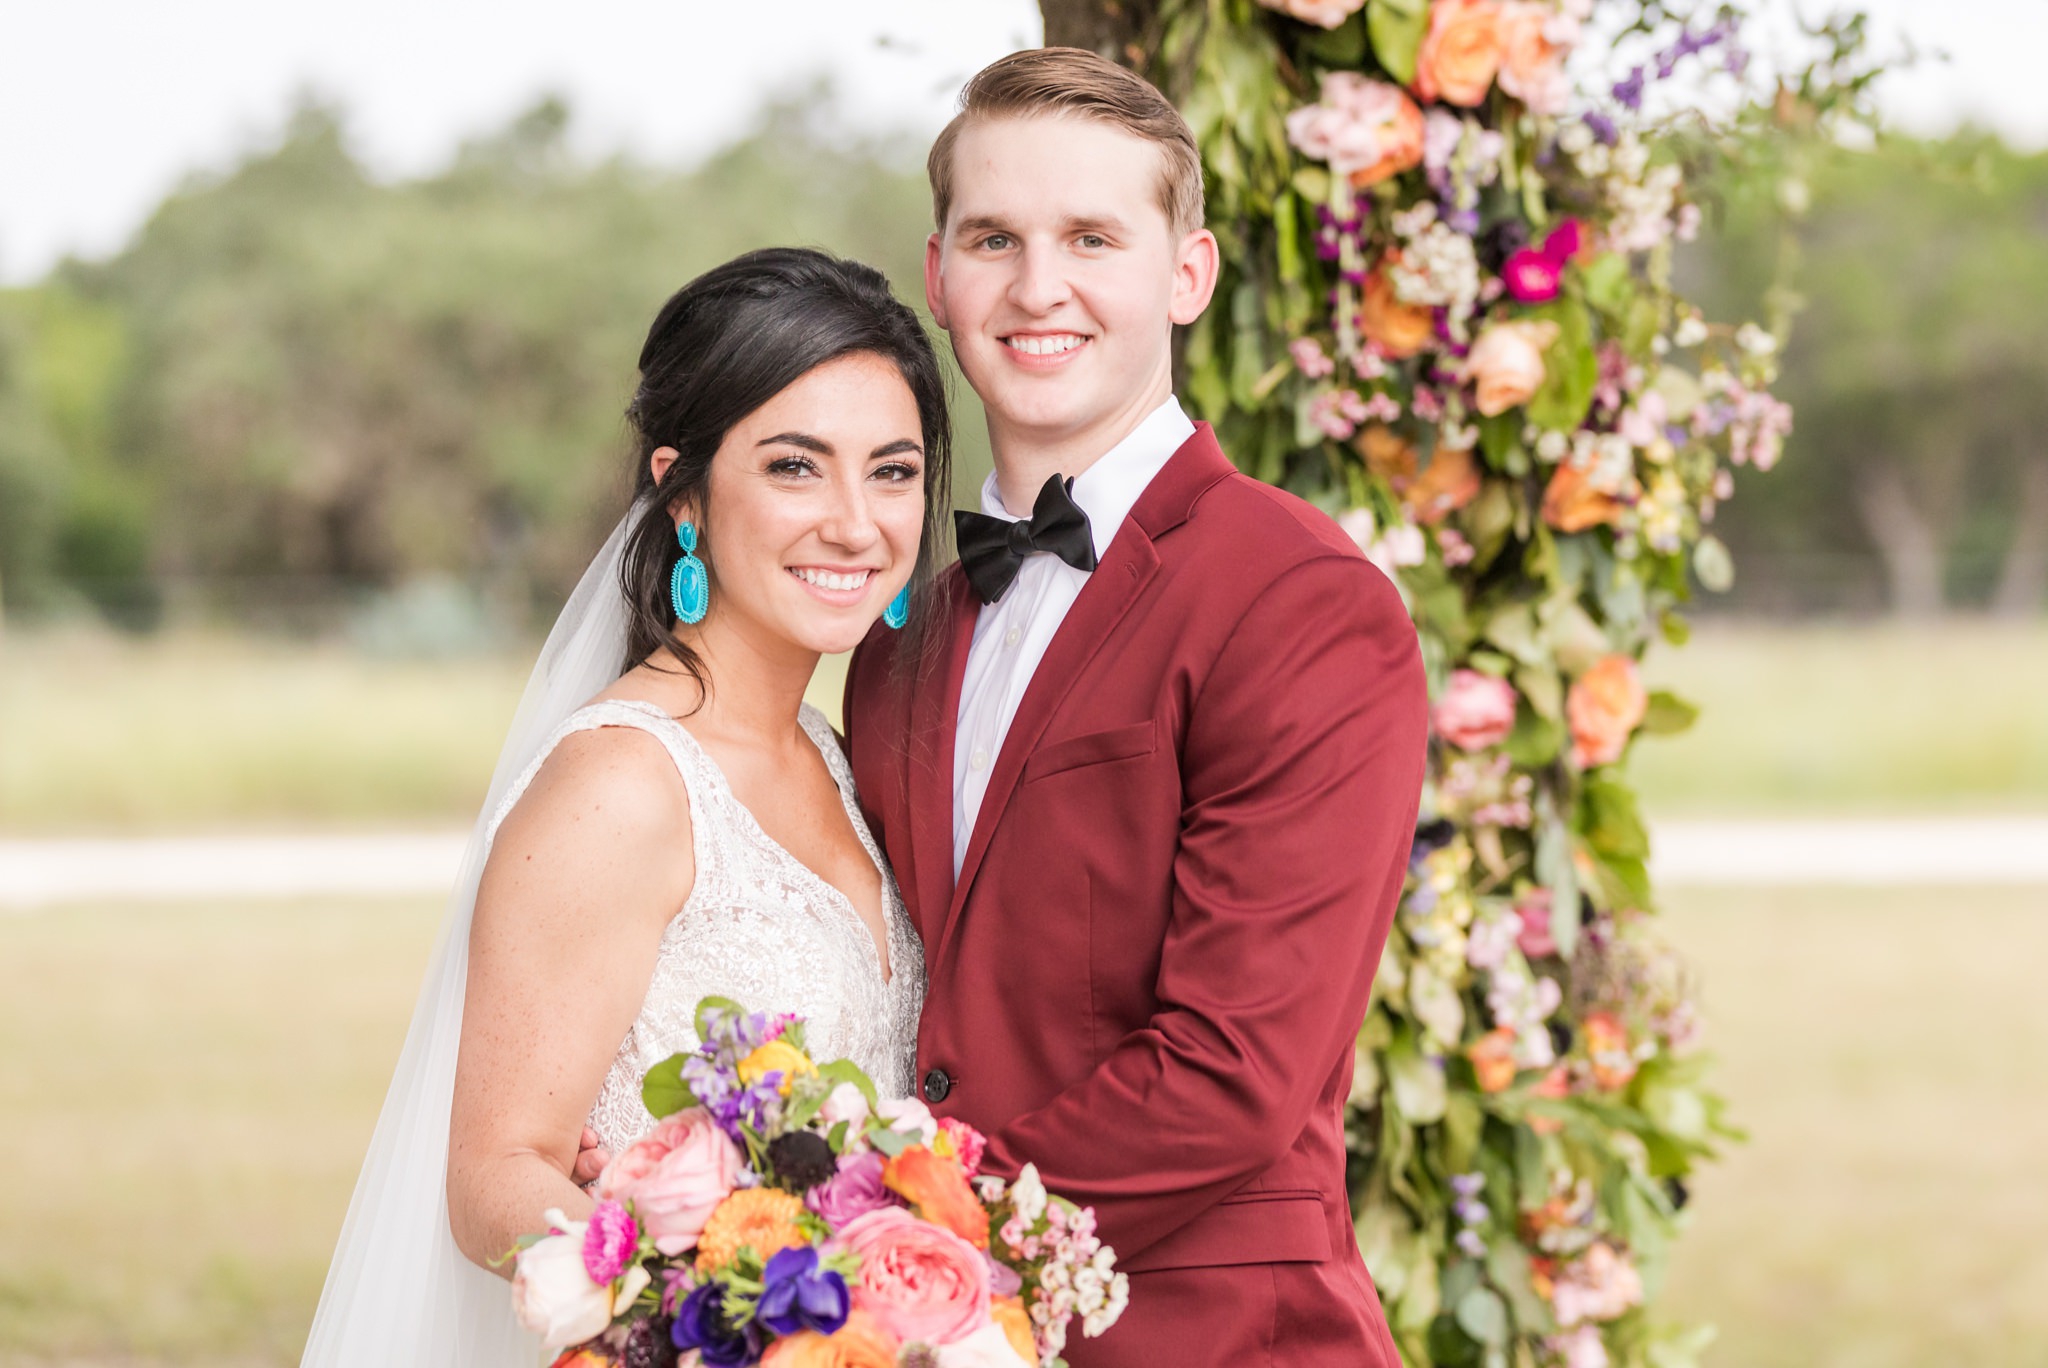 A Vibrant & Colorful Summer Wedding at Rockin' B Ranch in Boerne, TX by Dawn Elizabeth Studios, San Antonio Wedding Photographer